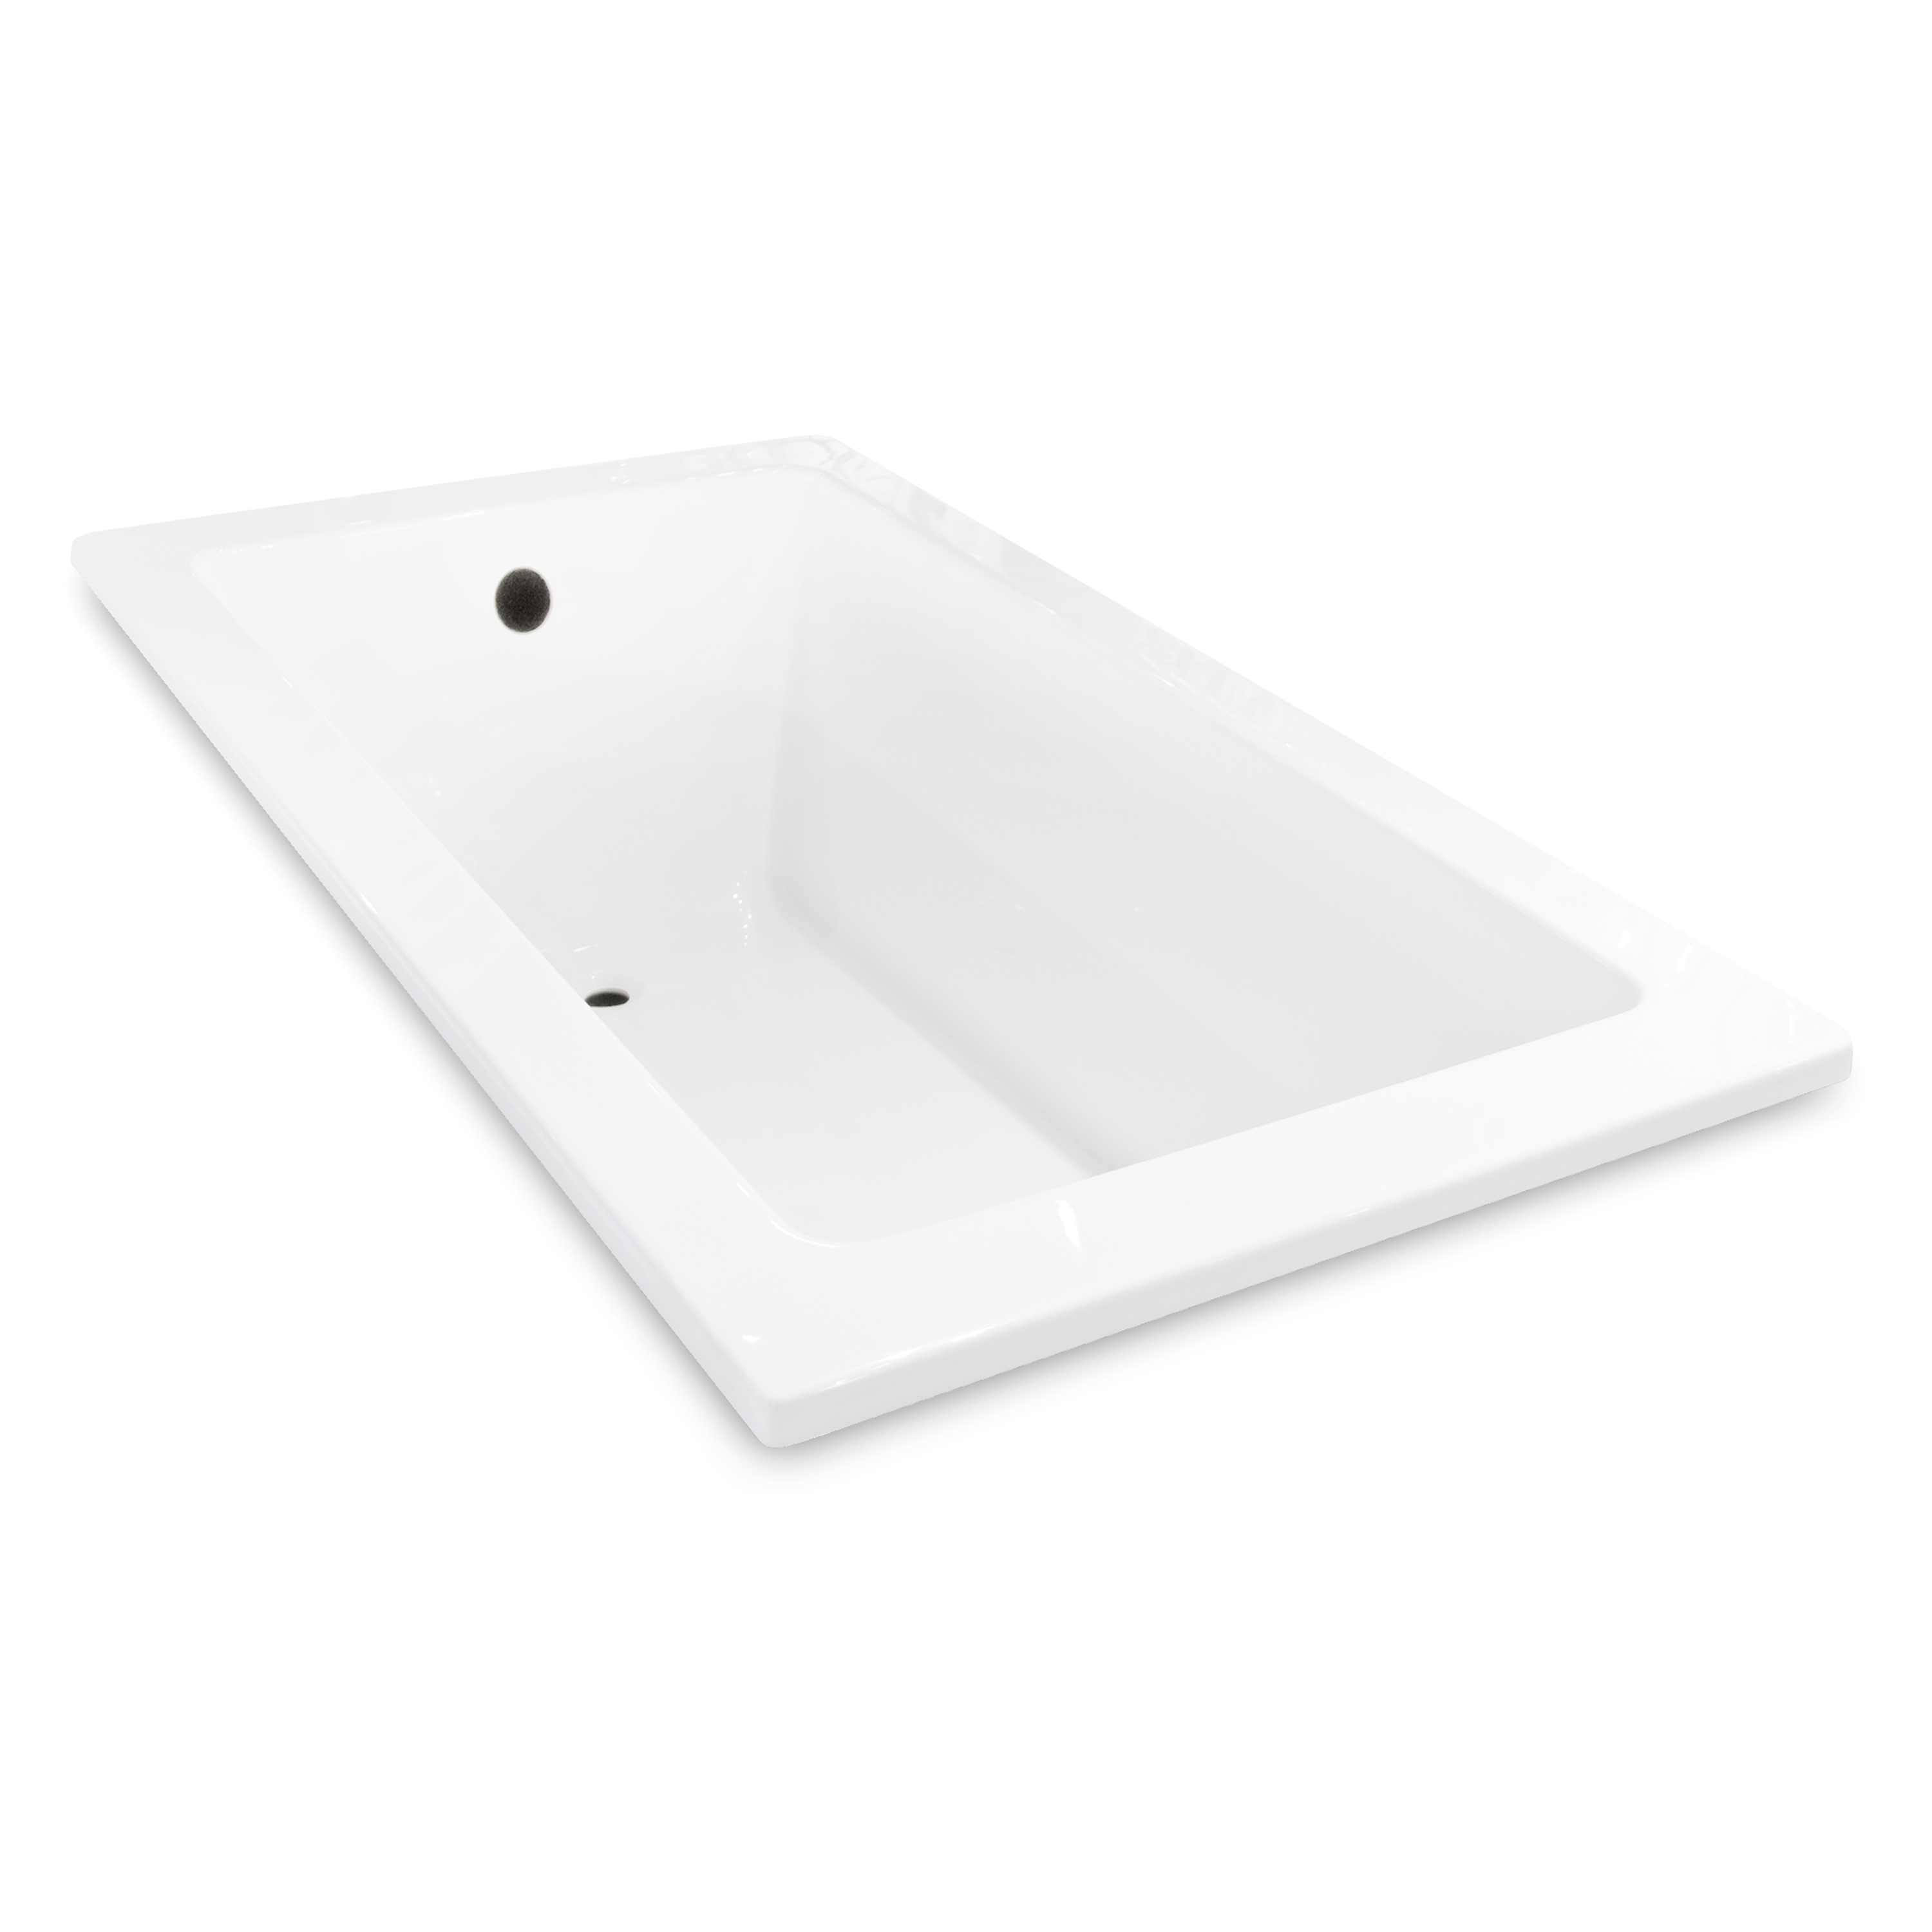 Elte, Cyan 6030 Soaker Bath - White